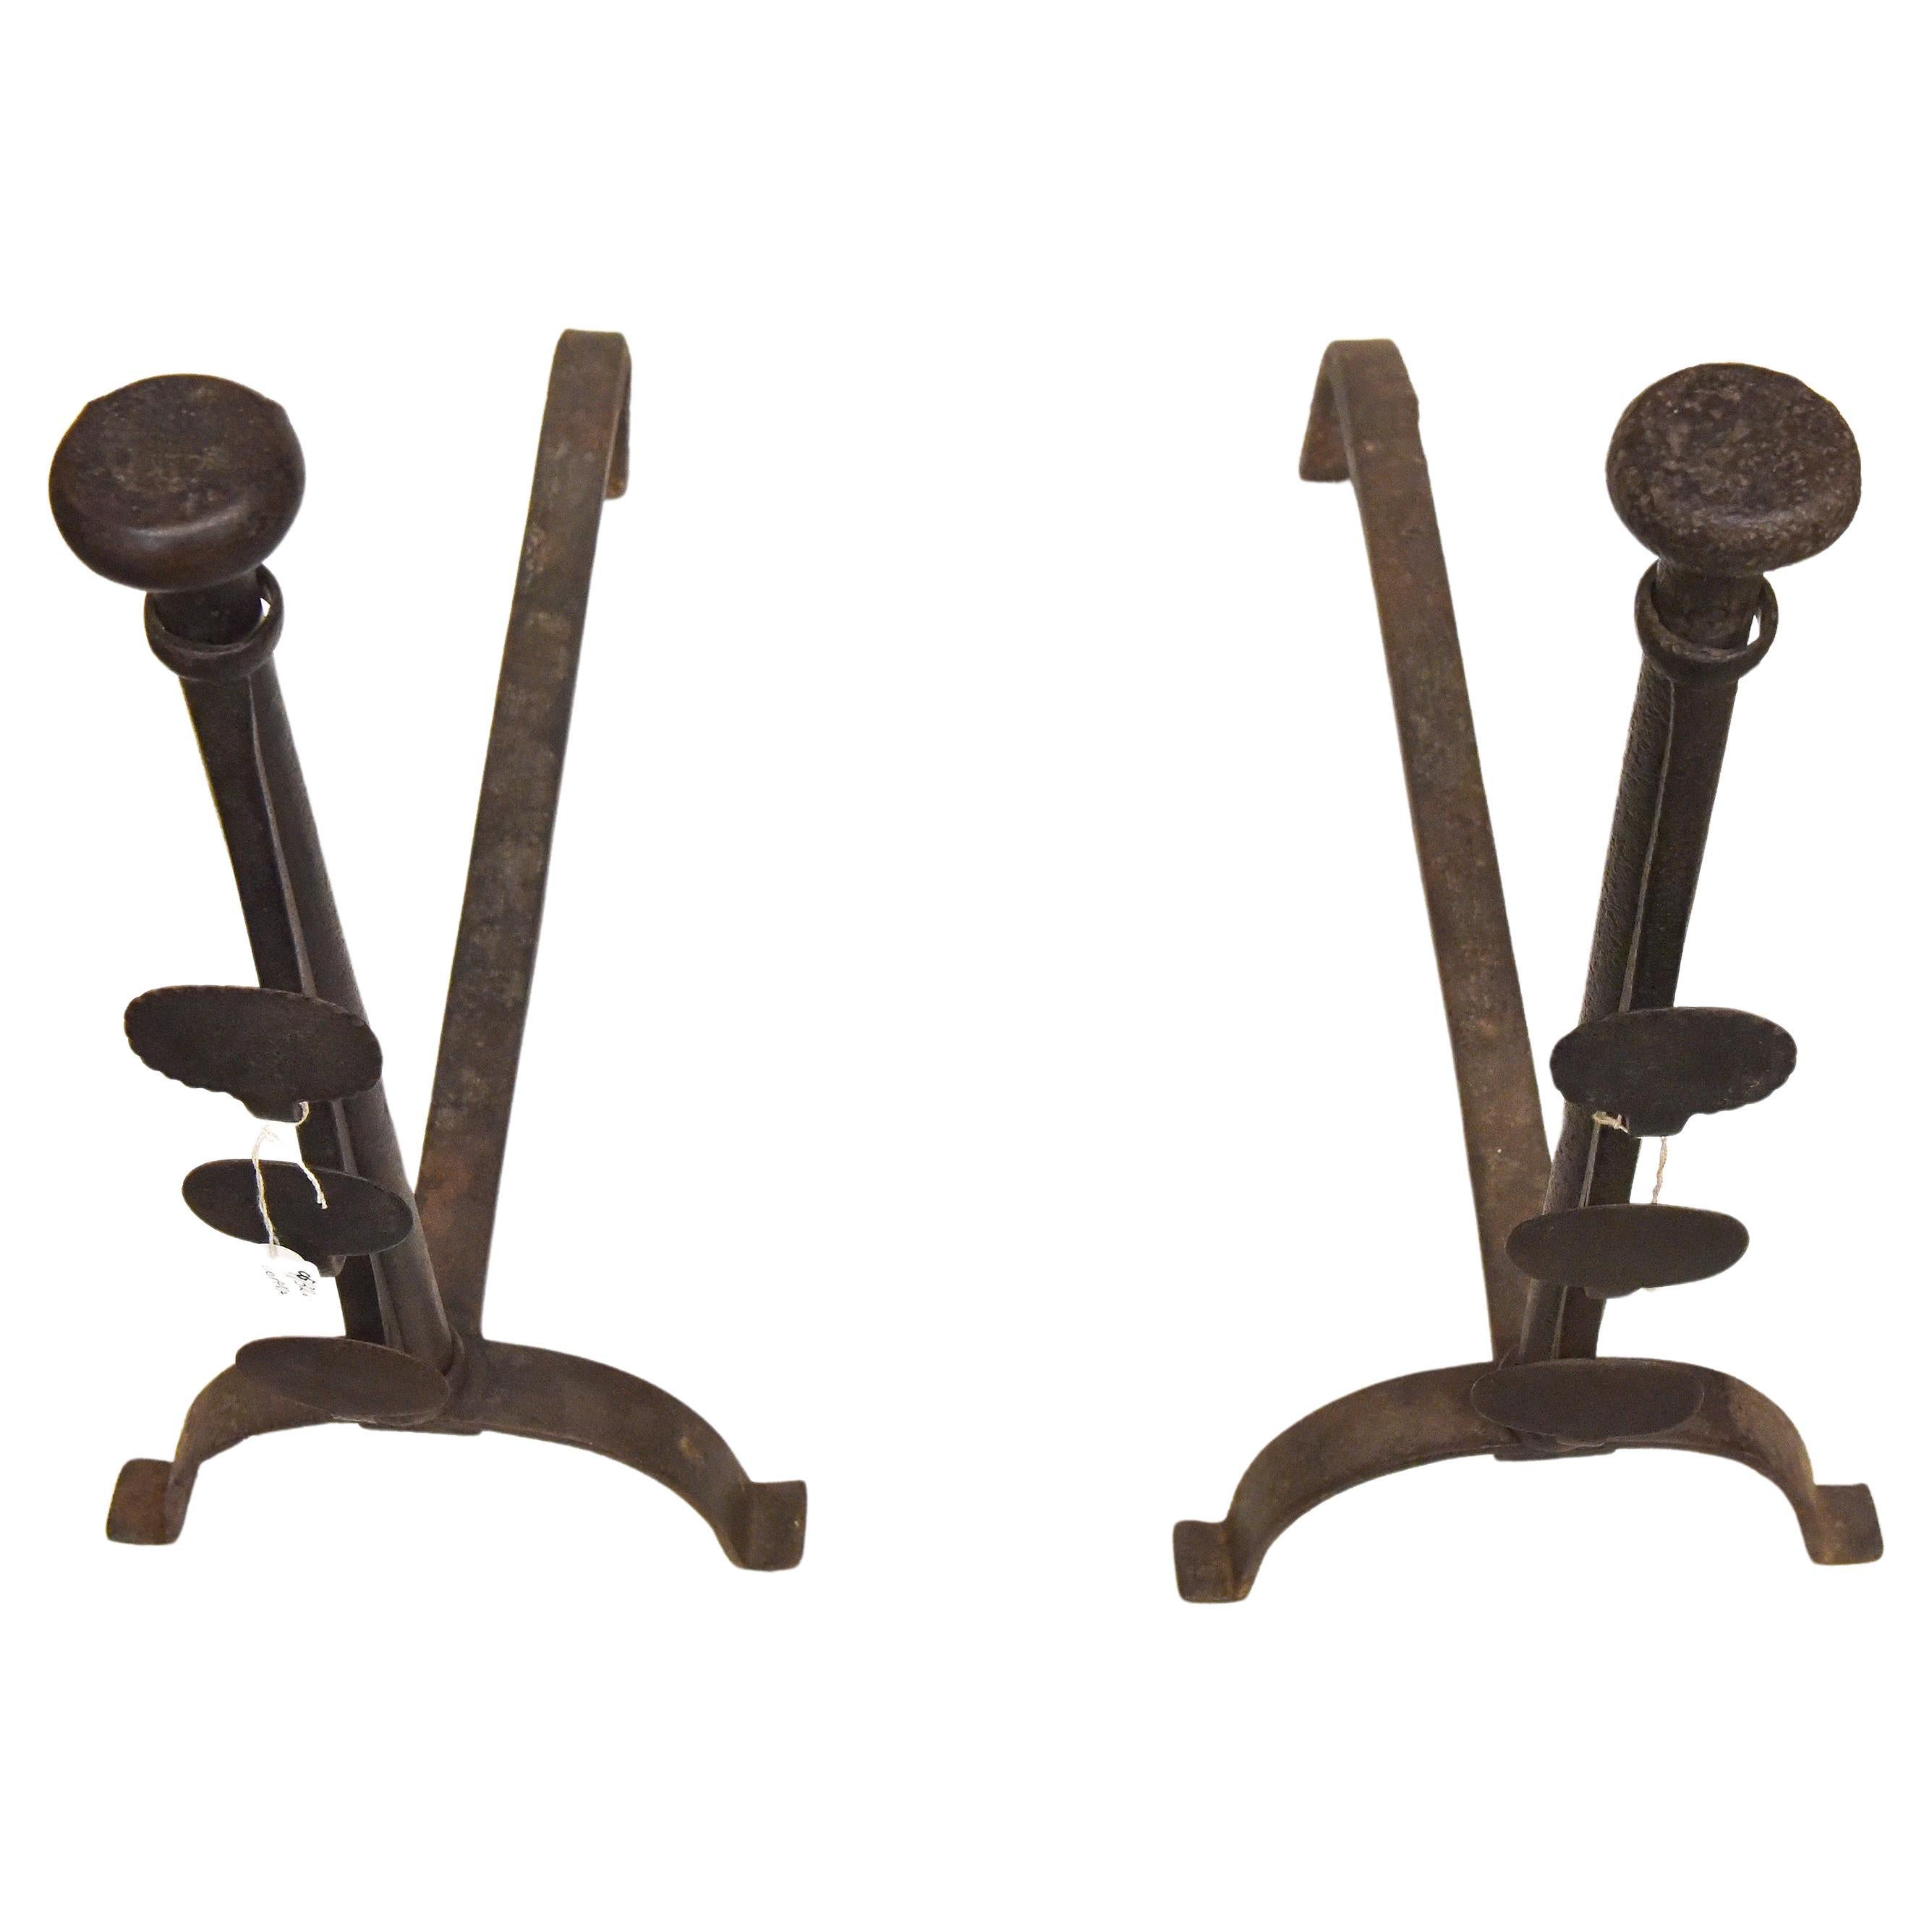 O/3265 - Paar antike französische Andirons, selten, weil mit verstellbaren Halterungen für Spieße: schön, funktionell, selten, mit einem guten Preis.